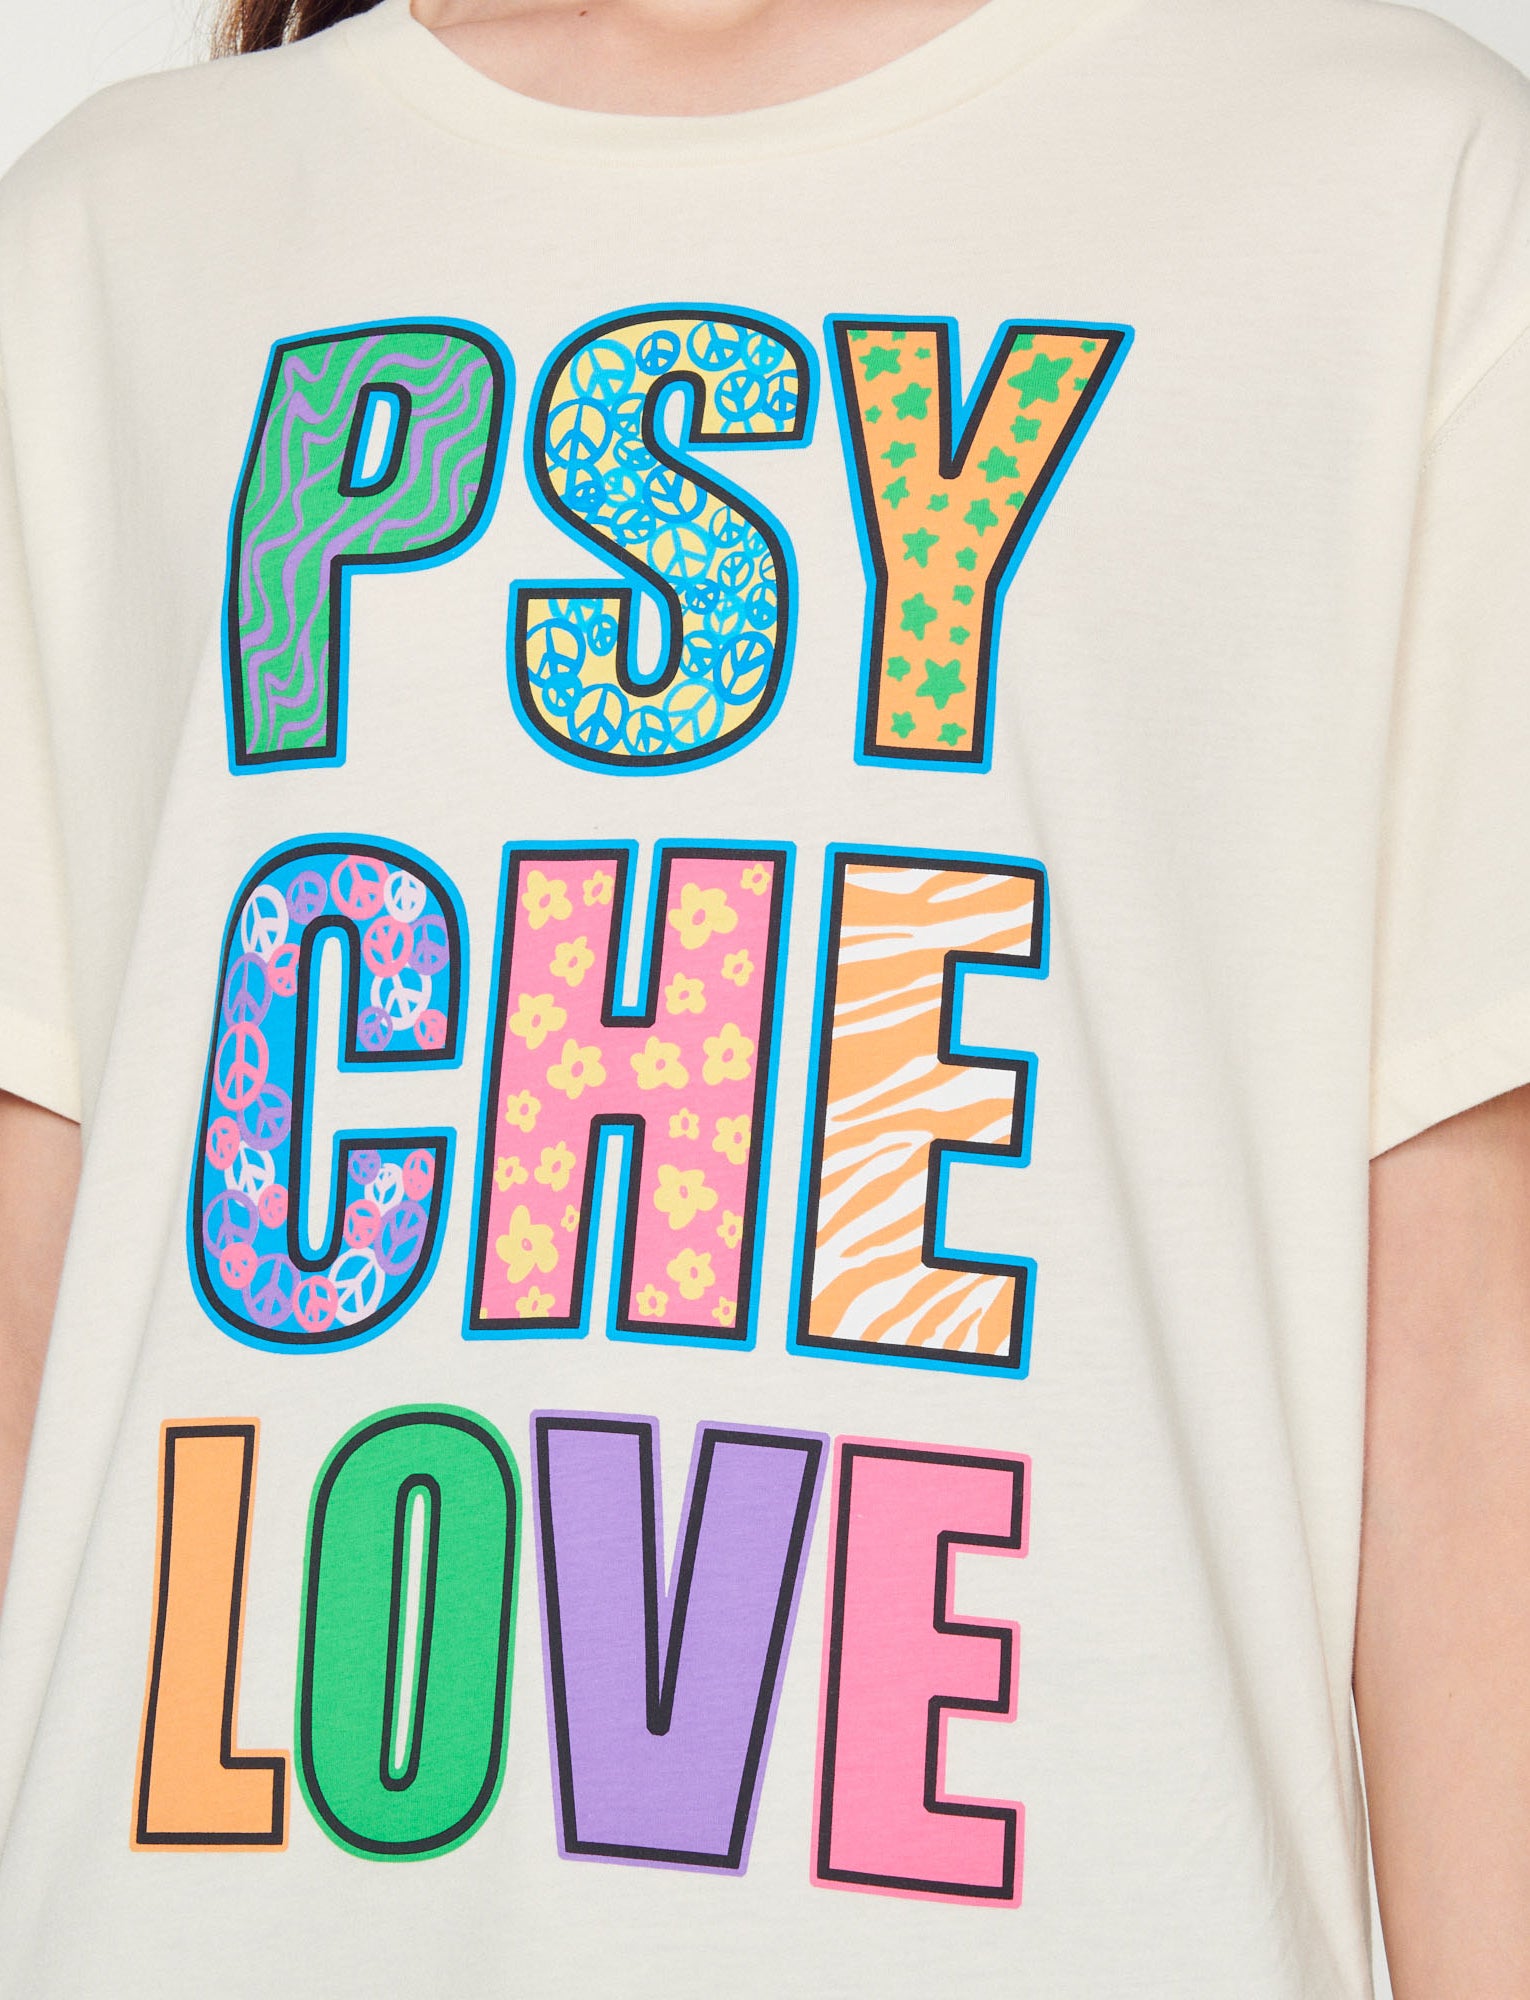 Camiseta PSYCHE LOVE